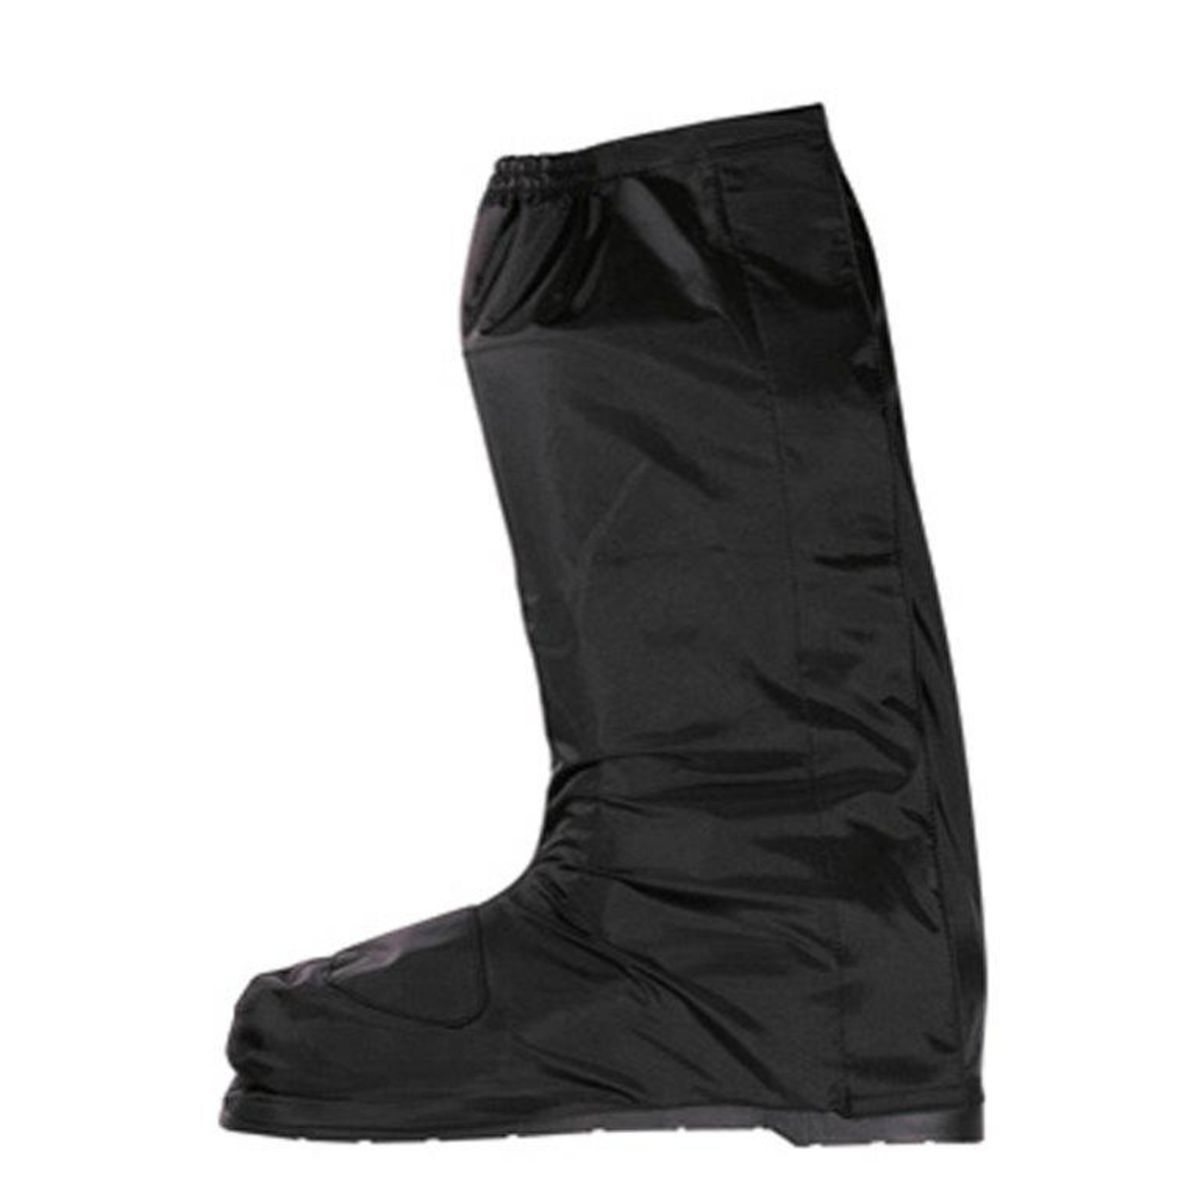 Protección contra la lluvia para el calzado ADRENALINE STEAM Talla 2XL